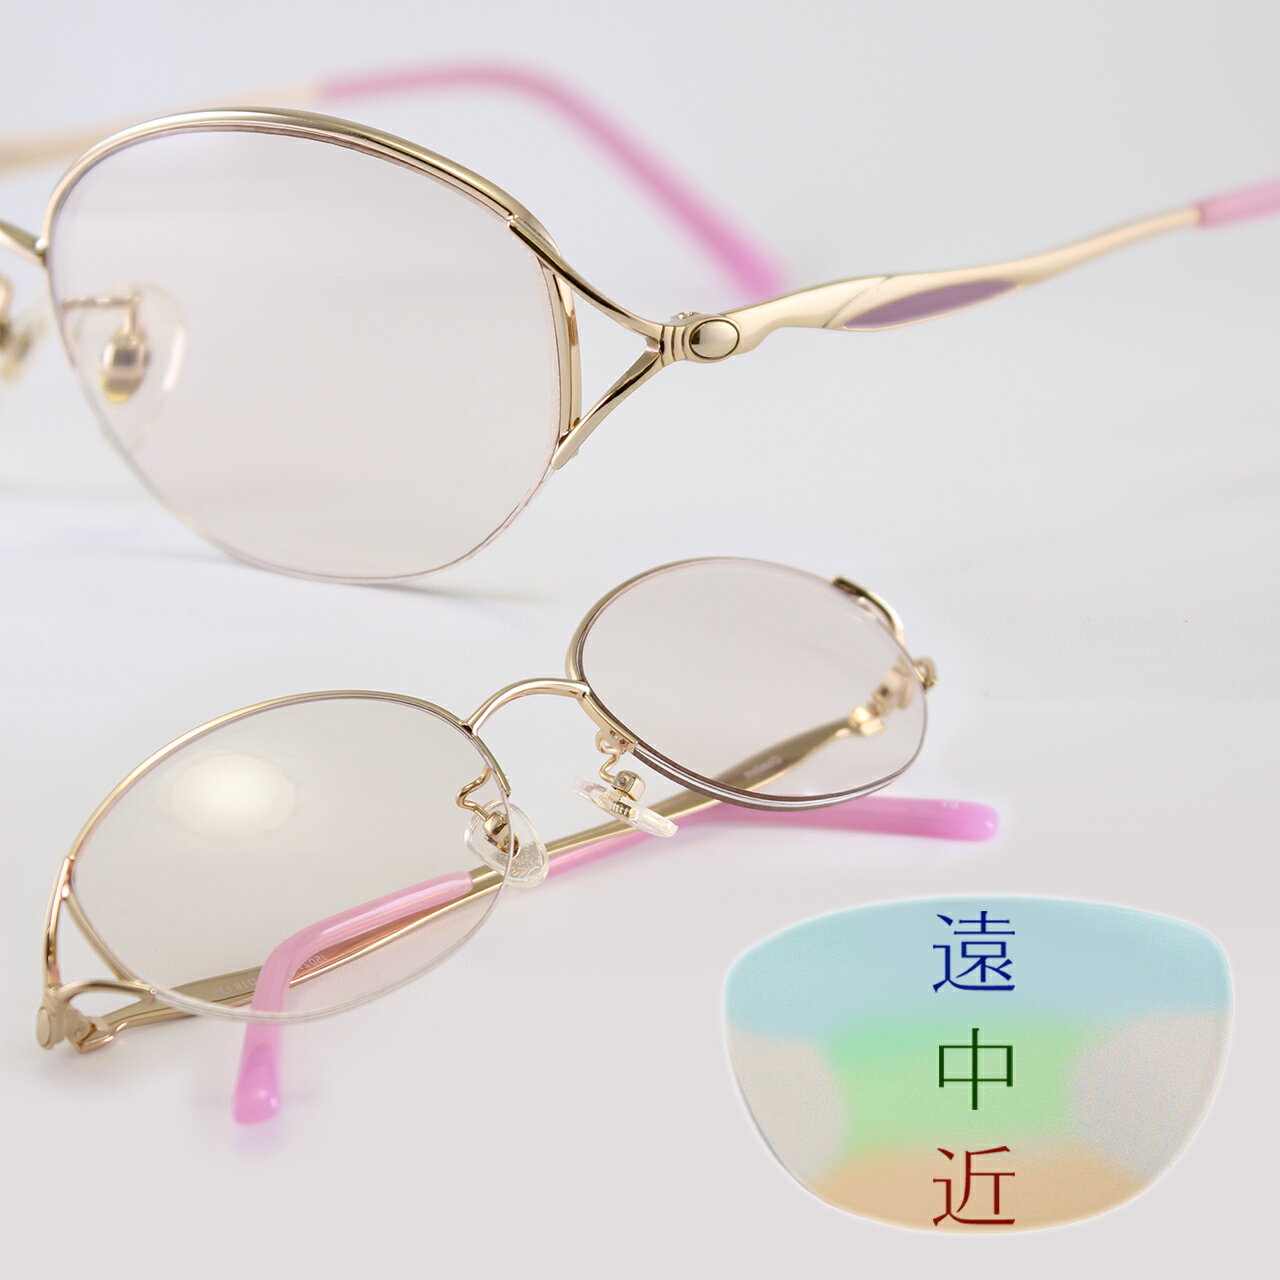 女性の美 [遠中近対応] 優しいピンクのおしゃれ老眼鏡 レディース ブルーライトカット UVカット1.5~4.5